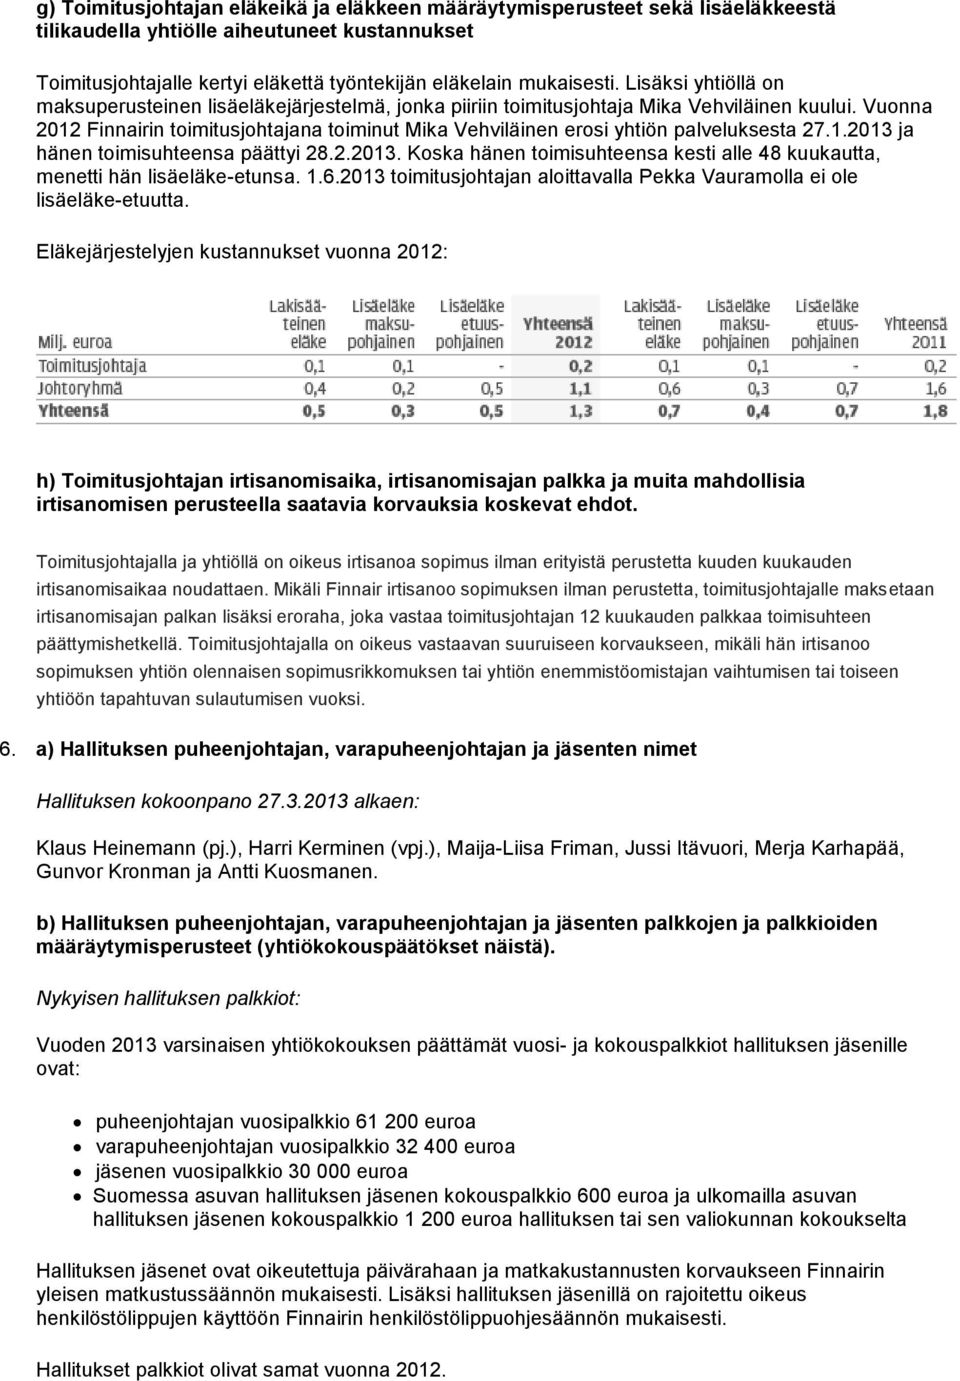 Vuonna 2012 Finnairin toimitusjohtajana toiminut Mika Vehviläinen erosi yhtiön palveluksesta 27.1.2013 ja hänen toimisuhteensa päättyi 28.2.2013. Koska hänen toimisuhteensa kesti alle 48 kuukautta, menetti hän lisäeläke-etunsa.